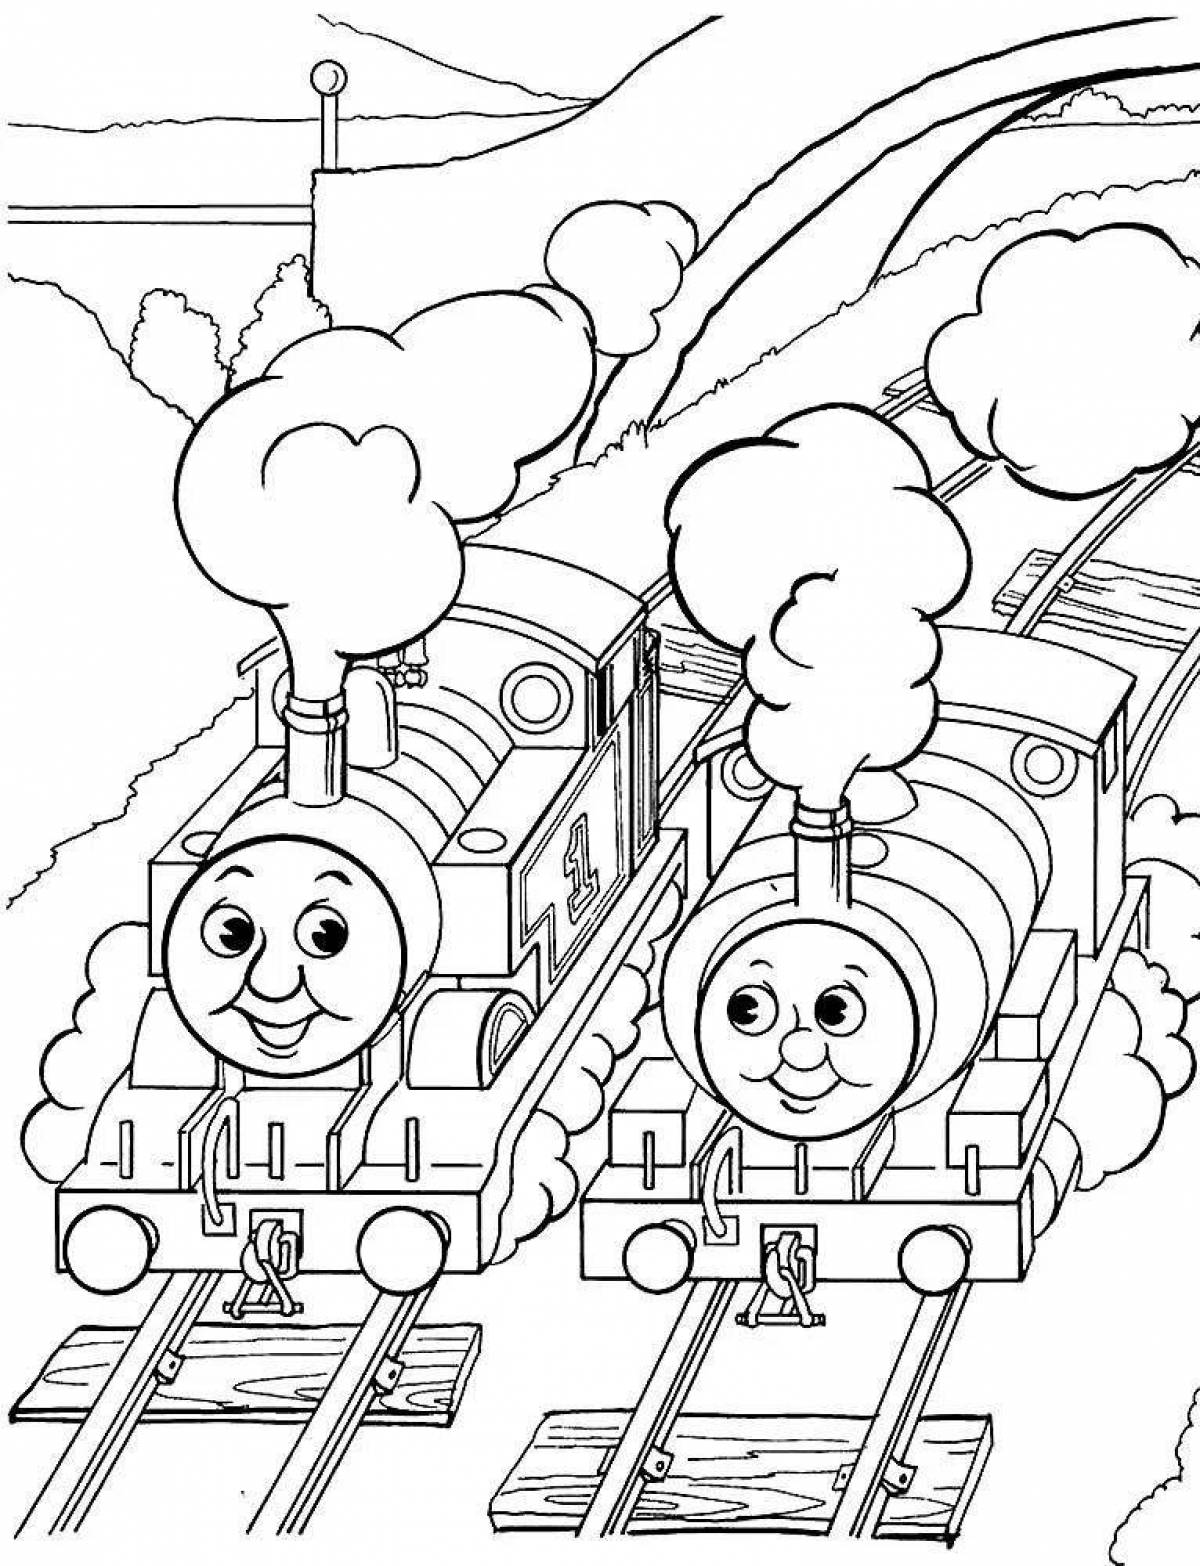 Красочная страница раскраски локомотива томаса